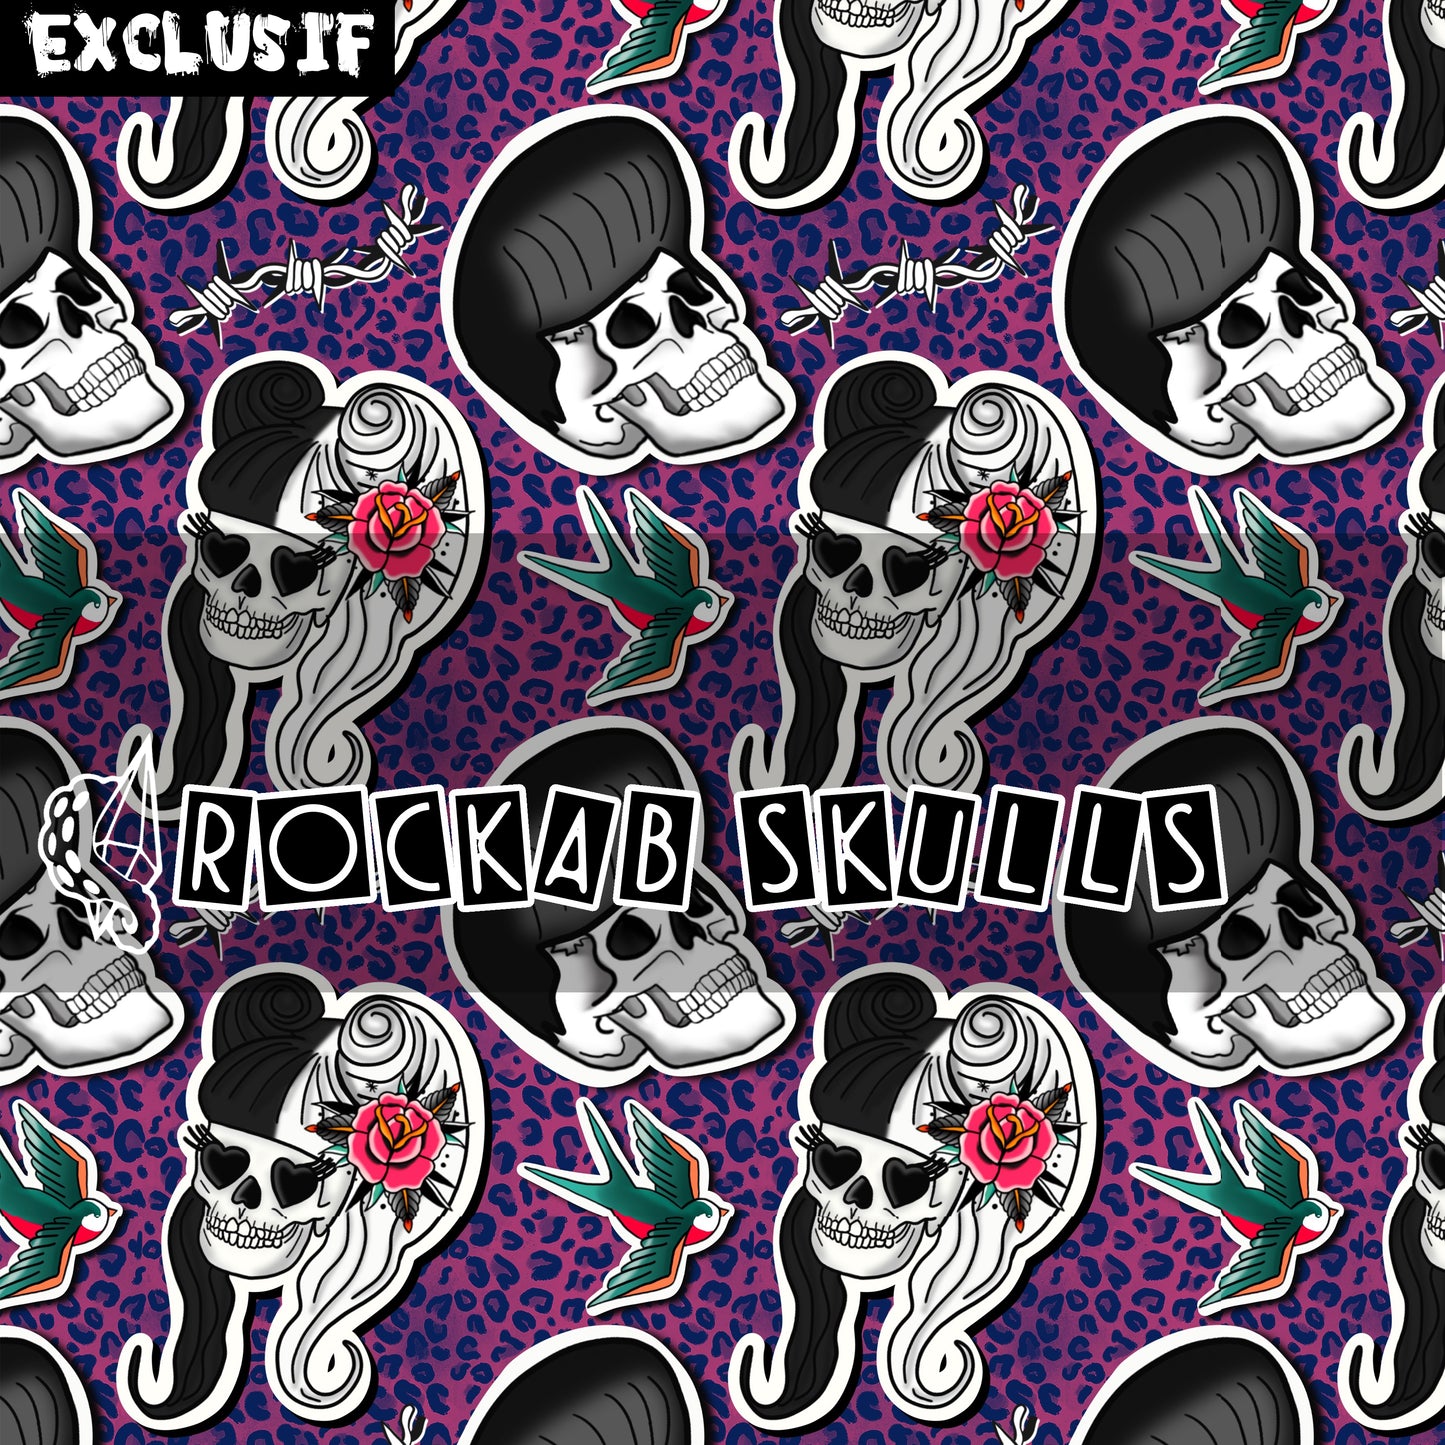 Rockab Skulls